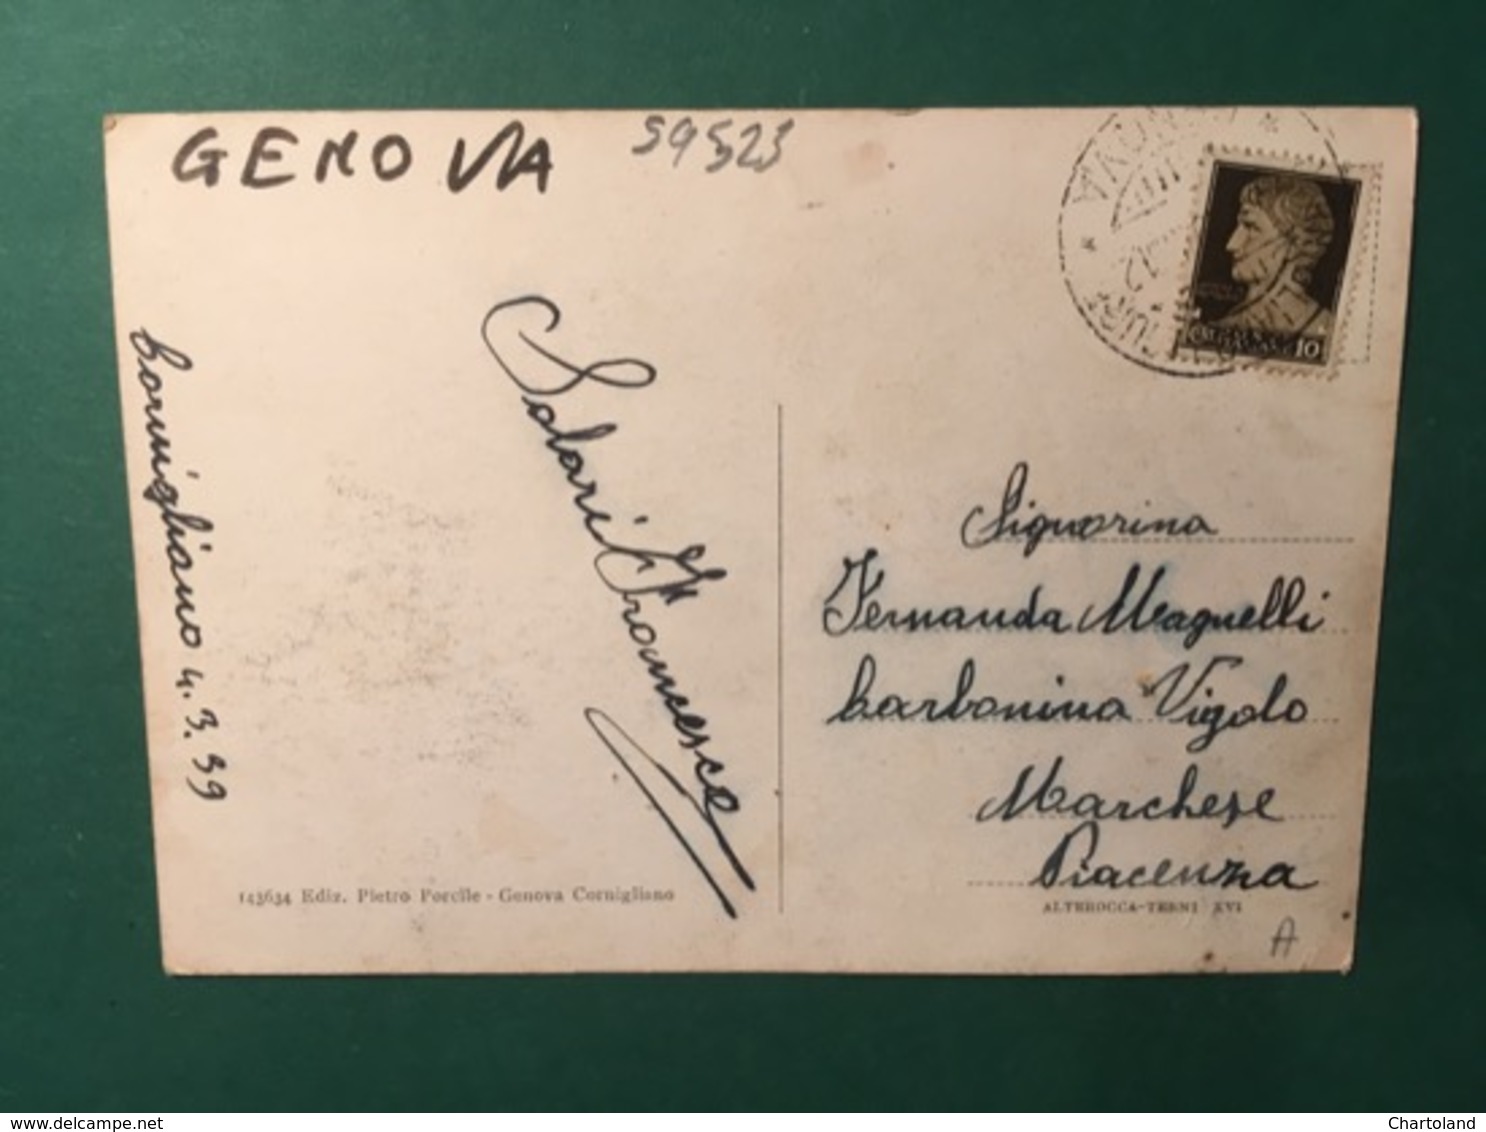 Cartolina Genova - Via Conigliano - 1939 - Genova